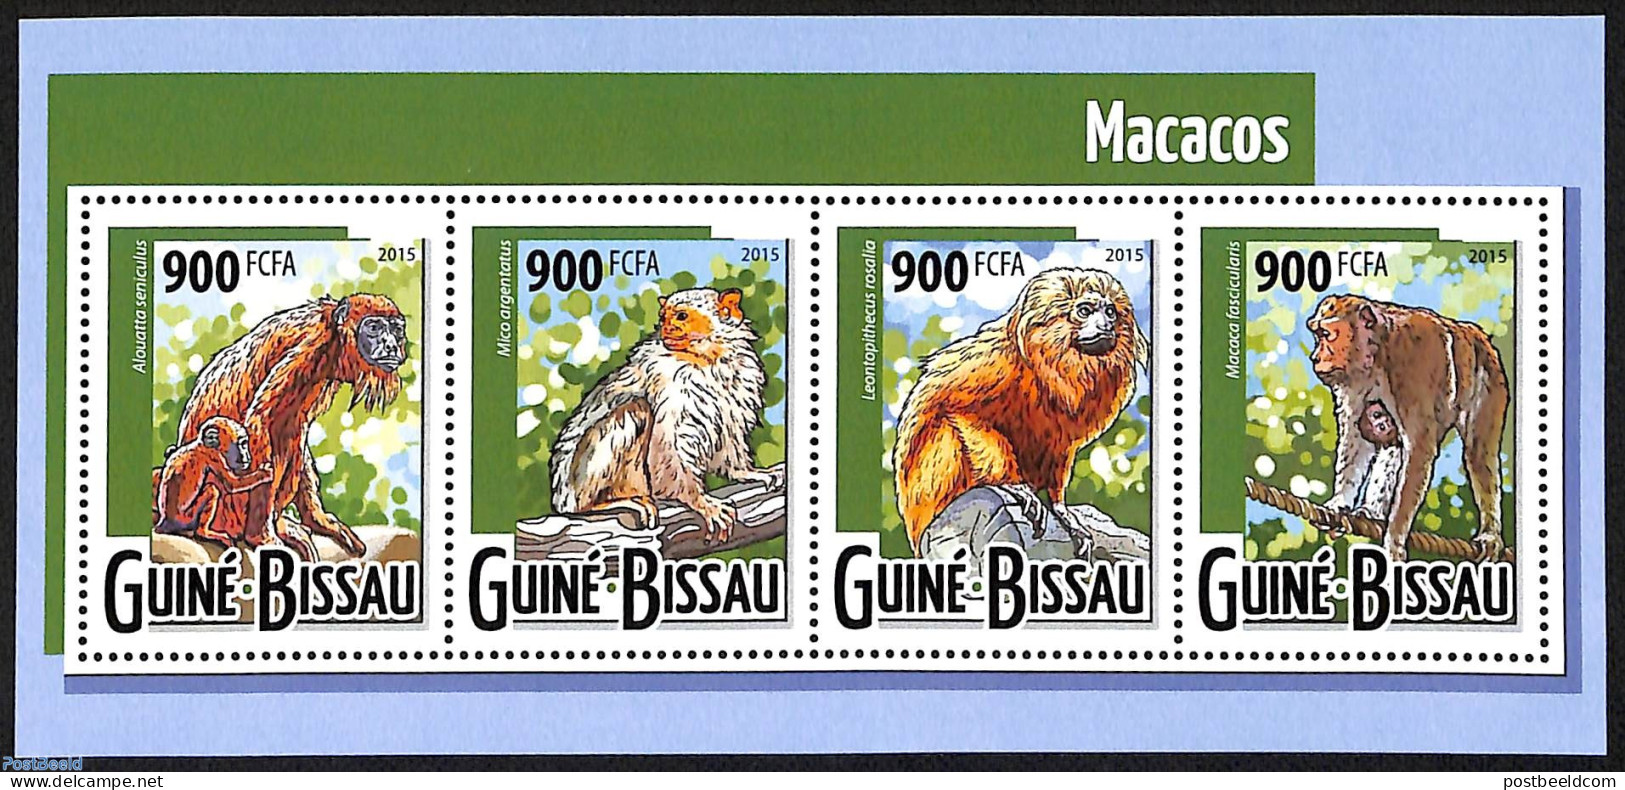 Guinea Bissau 2015 Monkeys, Mint NH, Nature - Monkeys - Guinée-Bissau